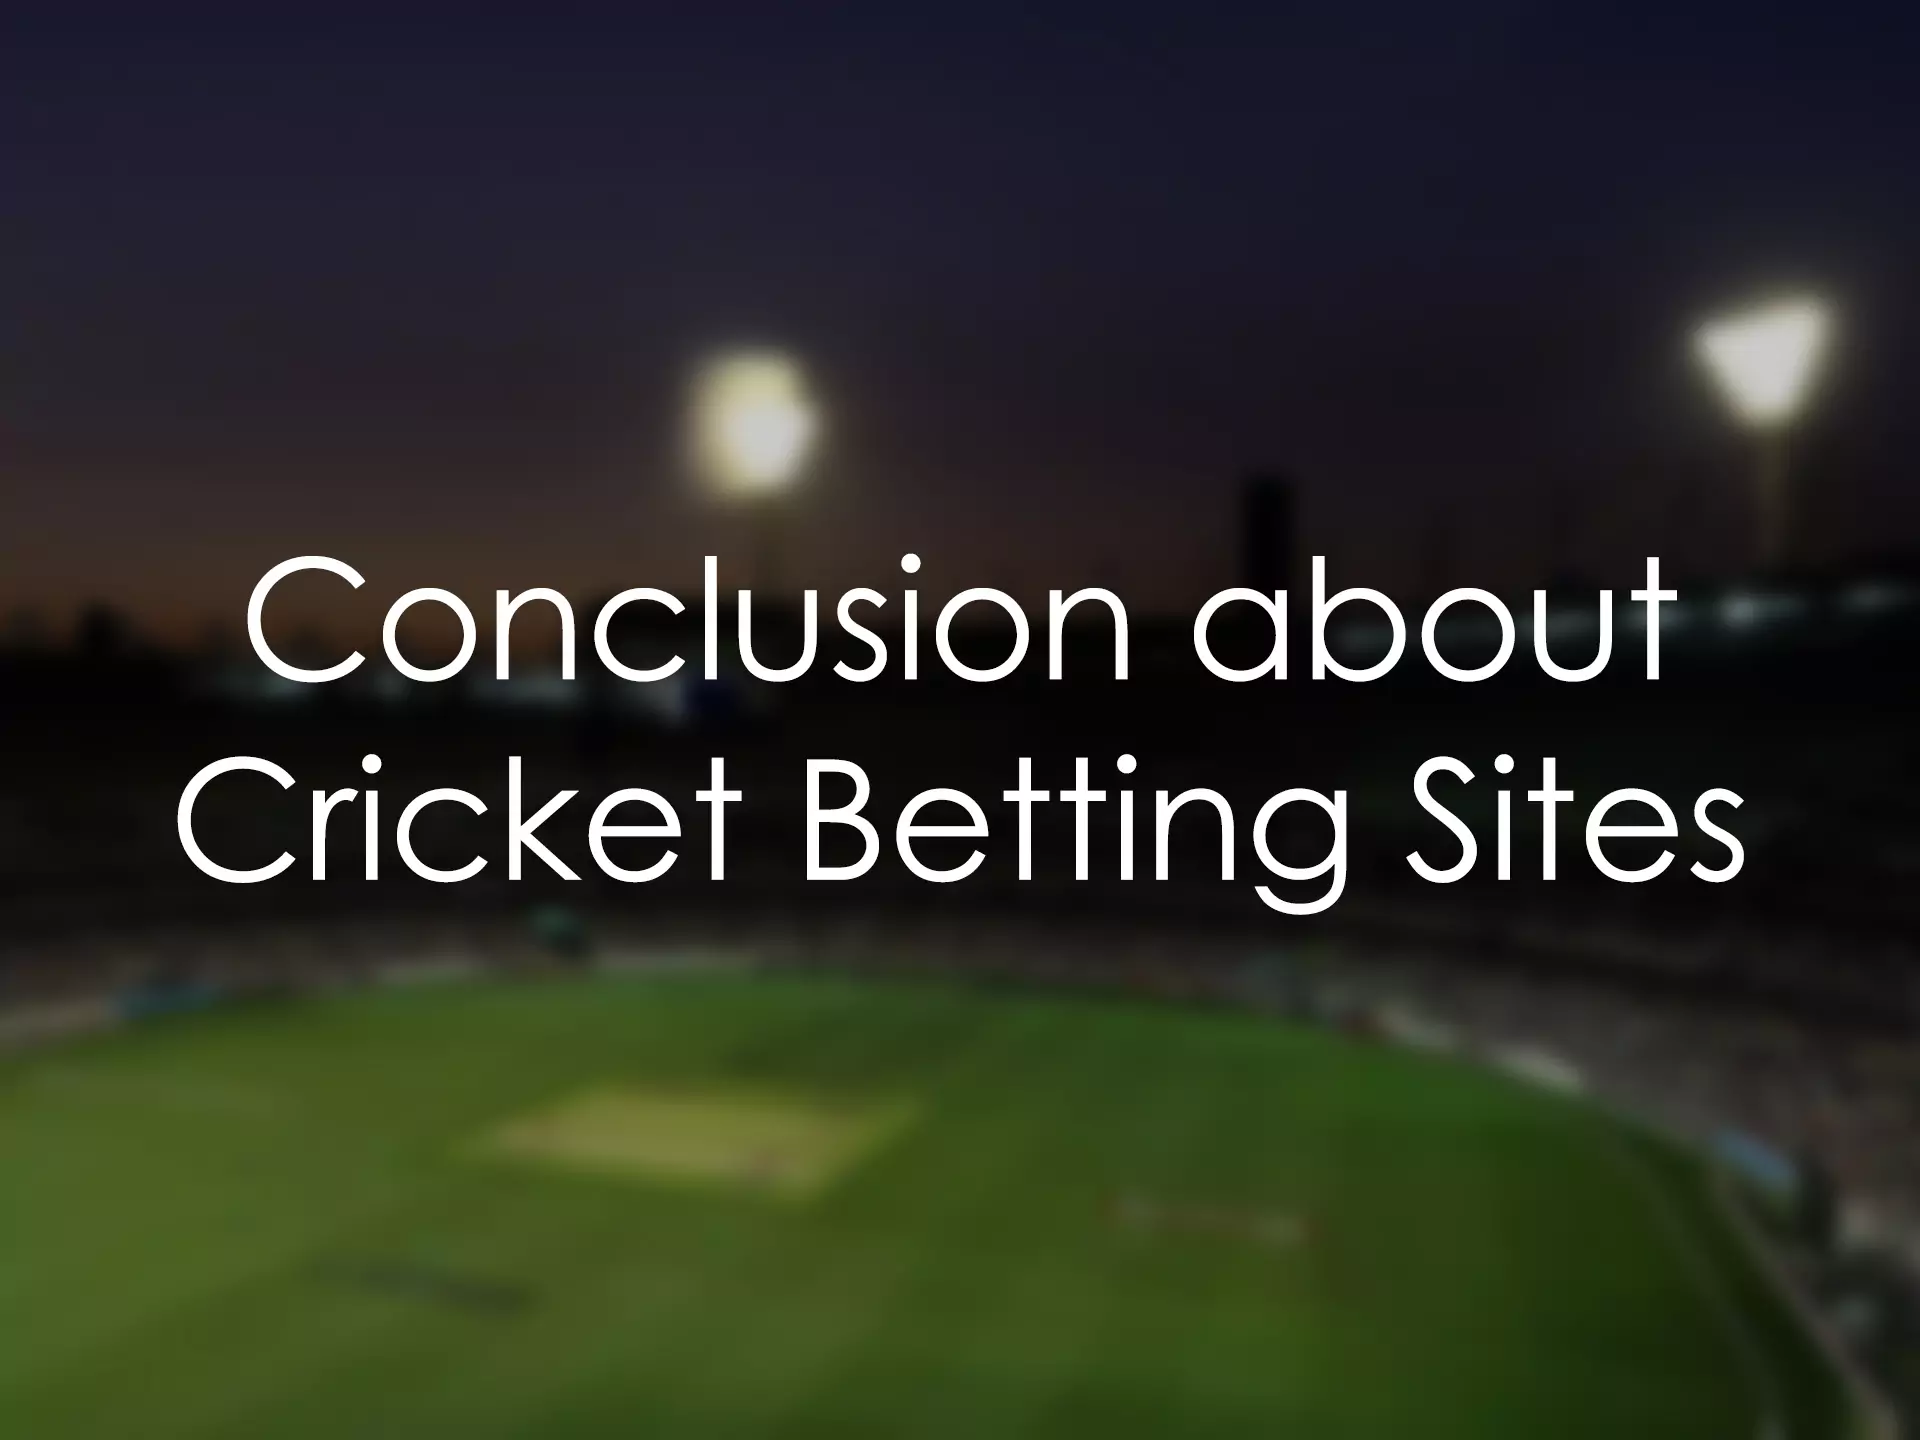 हमारा गाइड भारतीय उपयोगकर्ताओं को विश्वसनीय क्रिकेट सट्टेबाजी साइटों को चुनने में मदद करेगा।